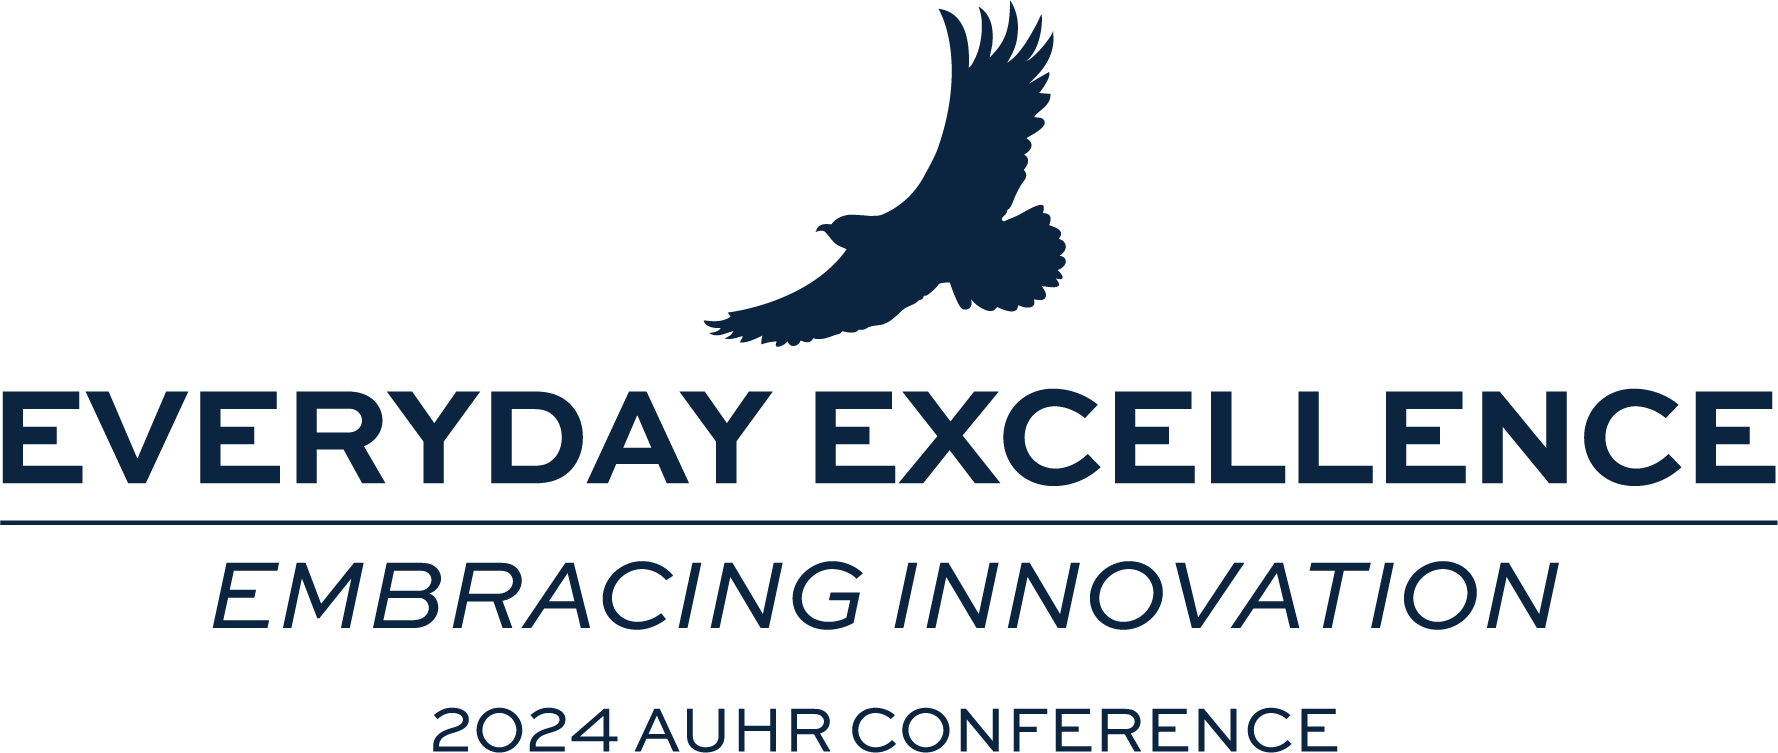 HR conference logo